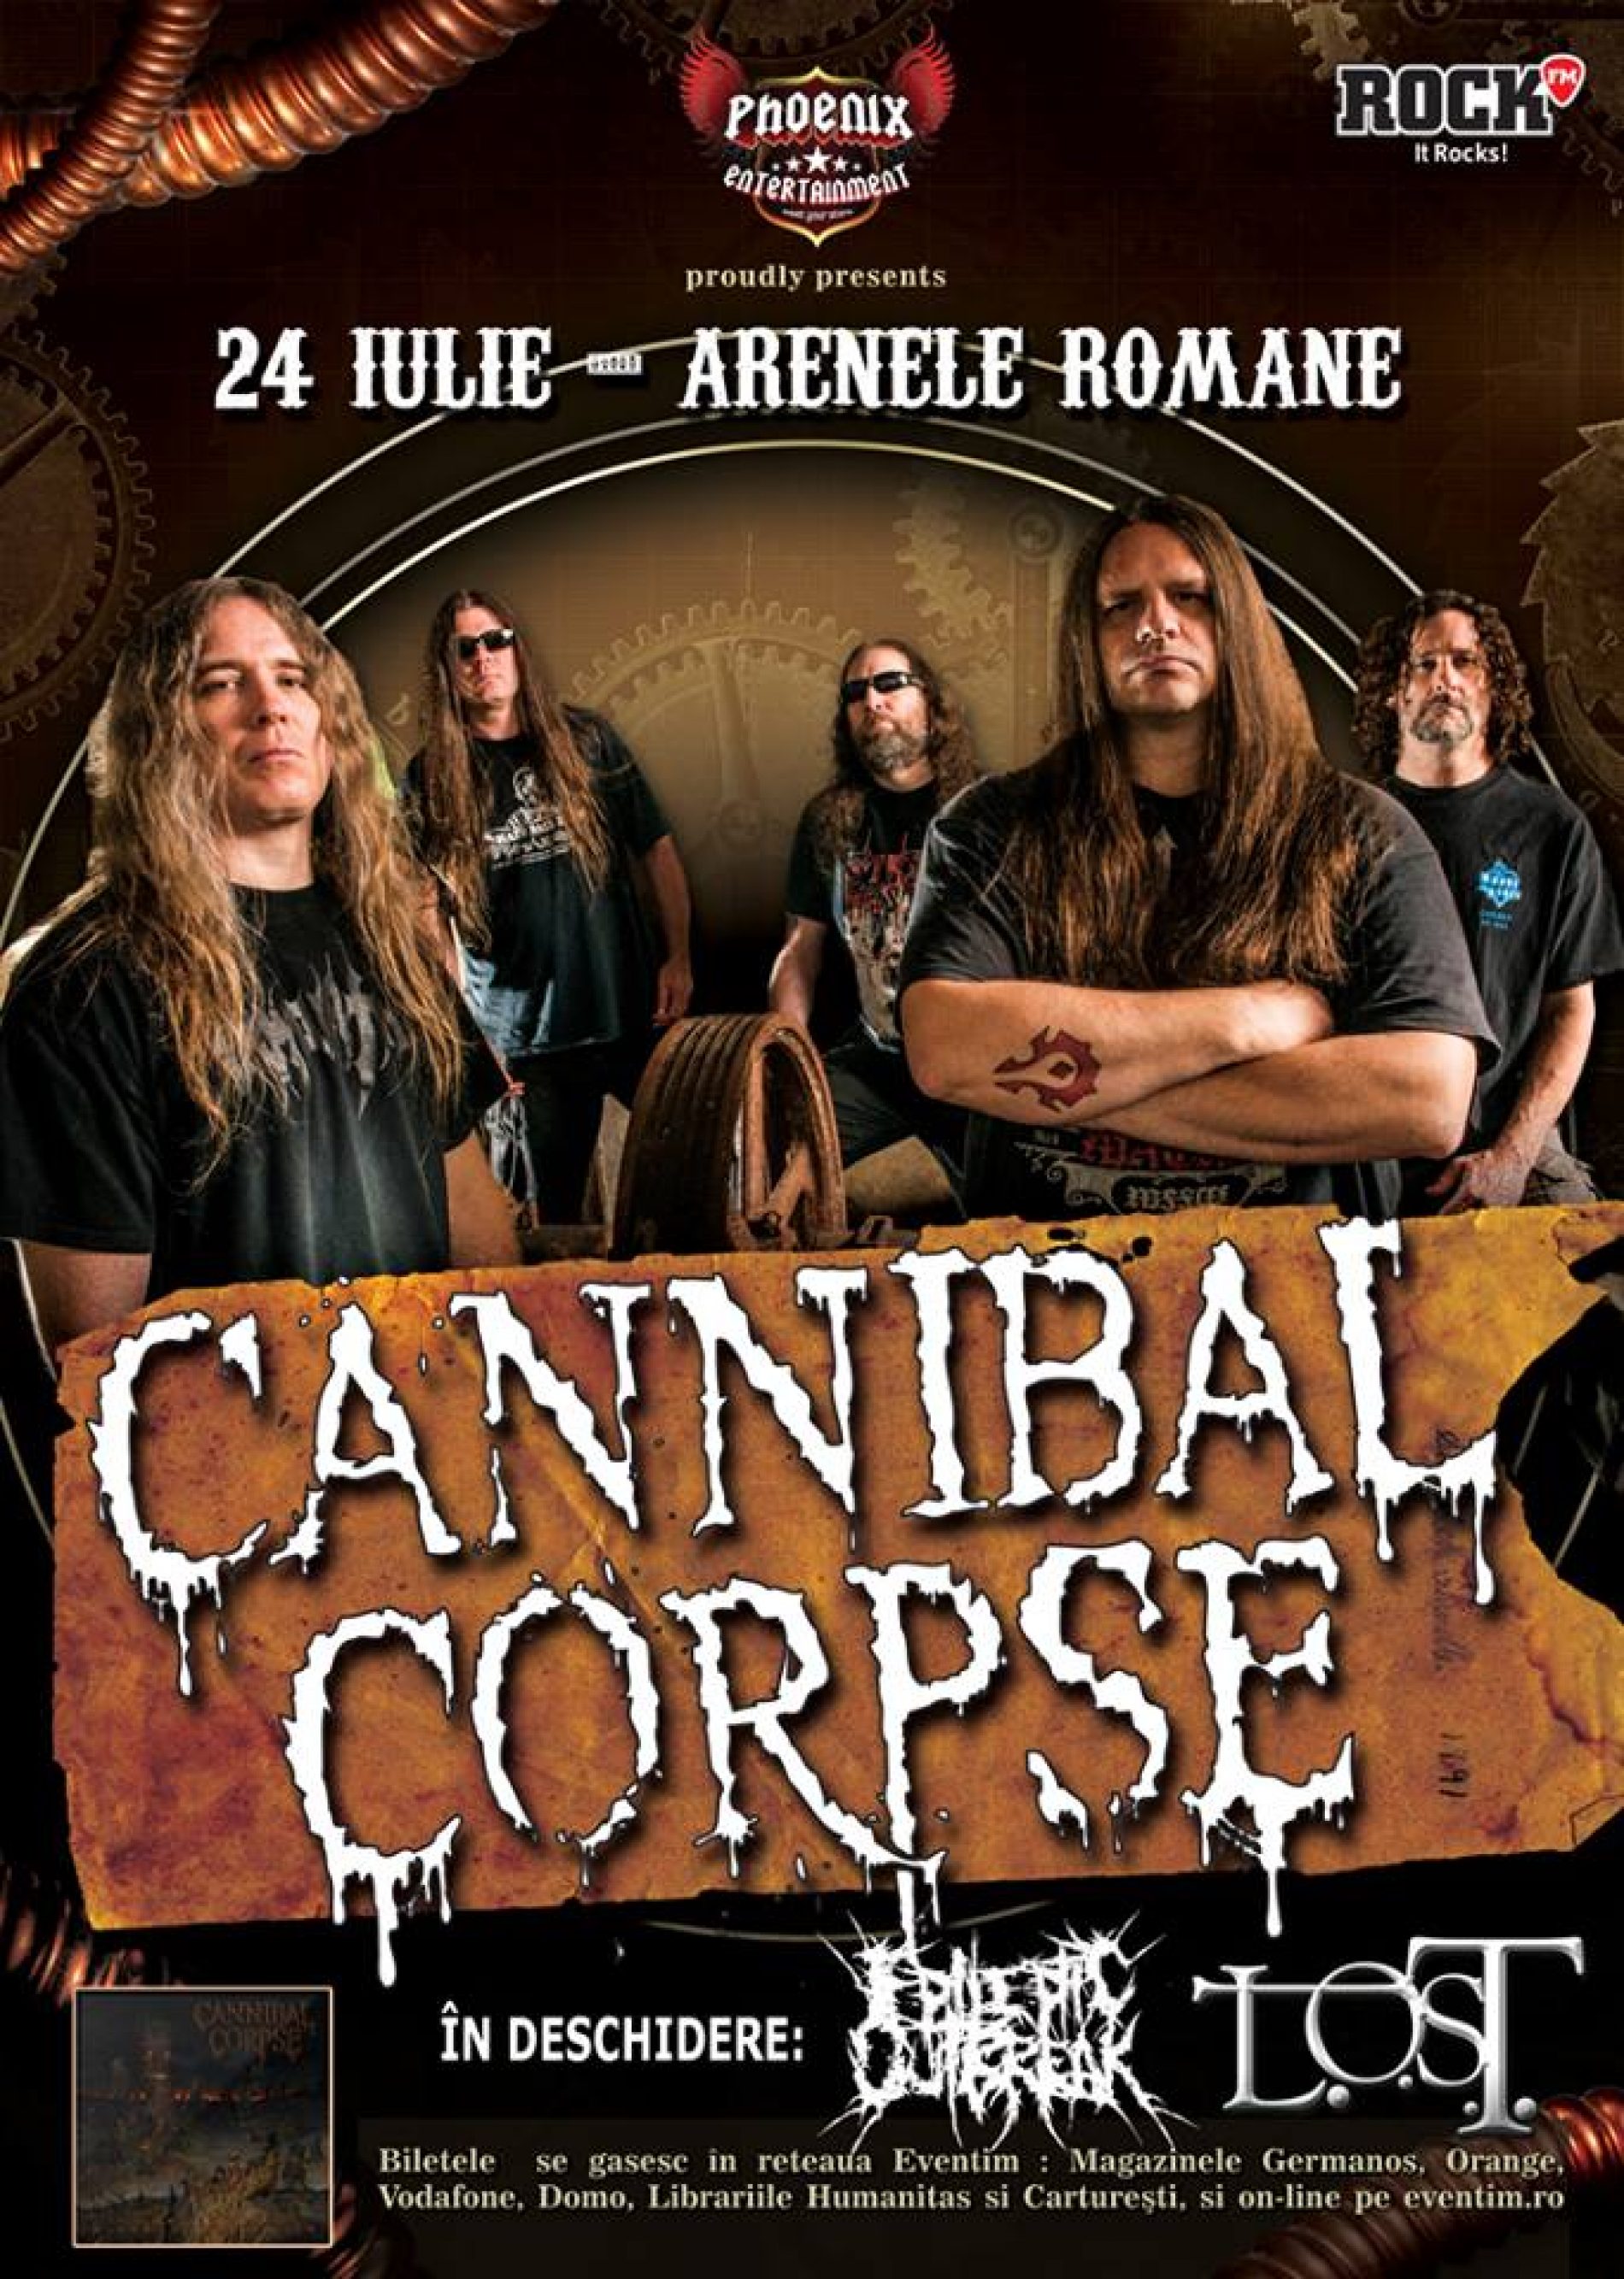 Program și reguli de acces Cannibal Corpse